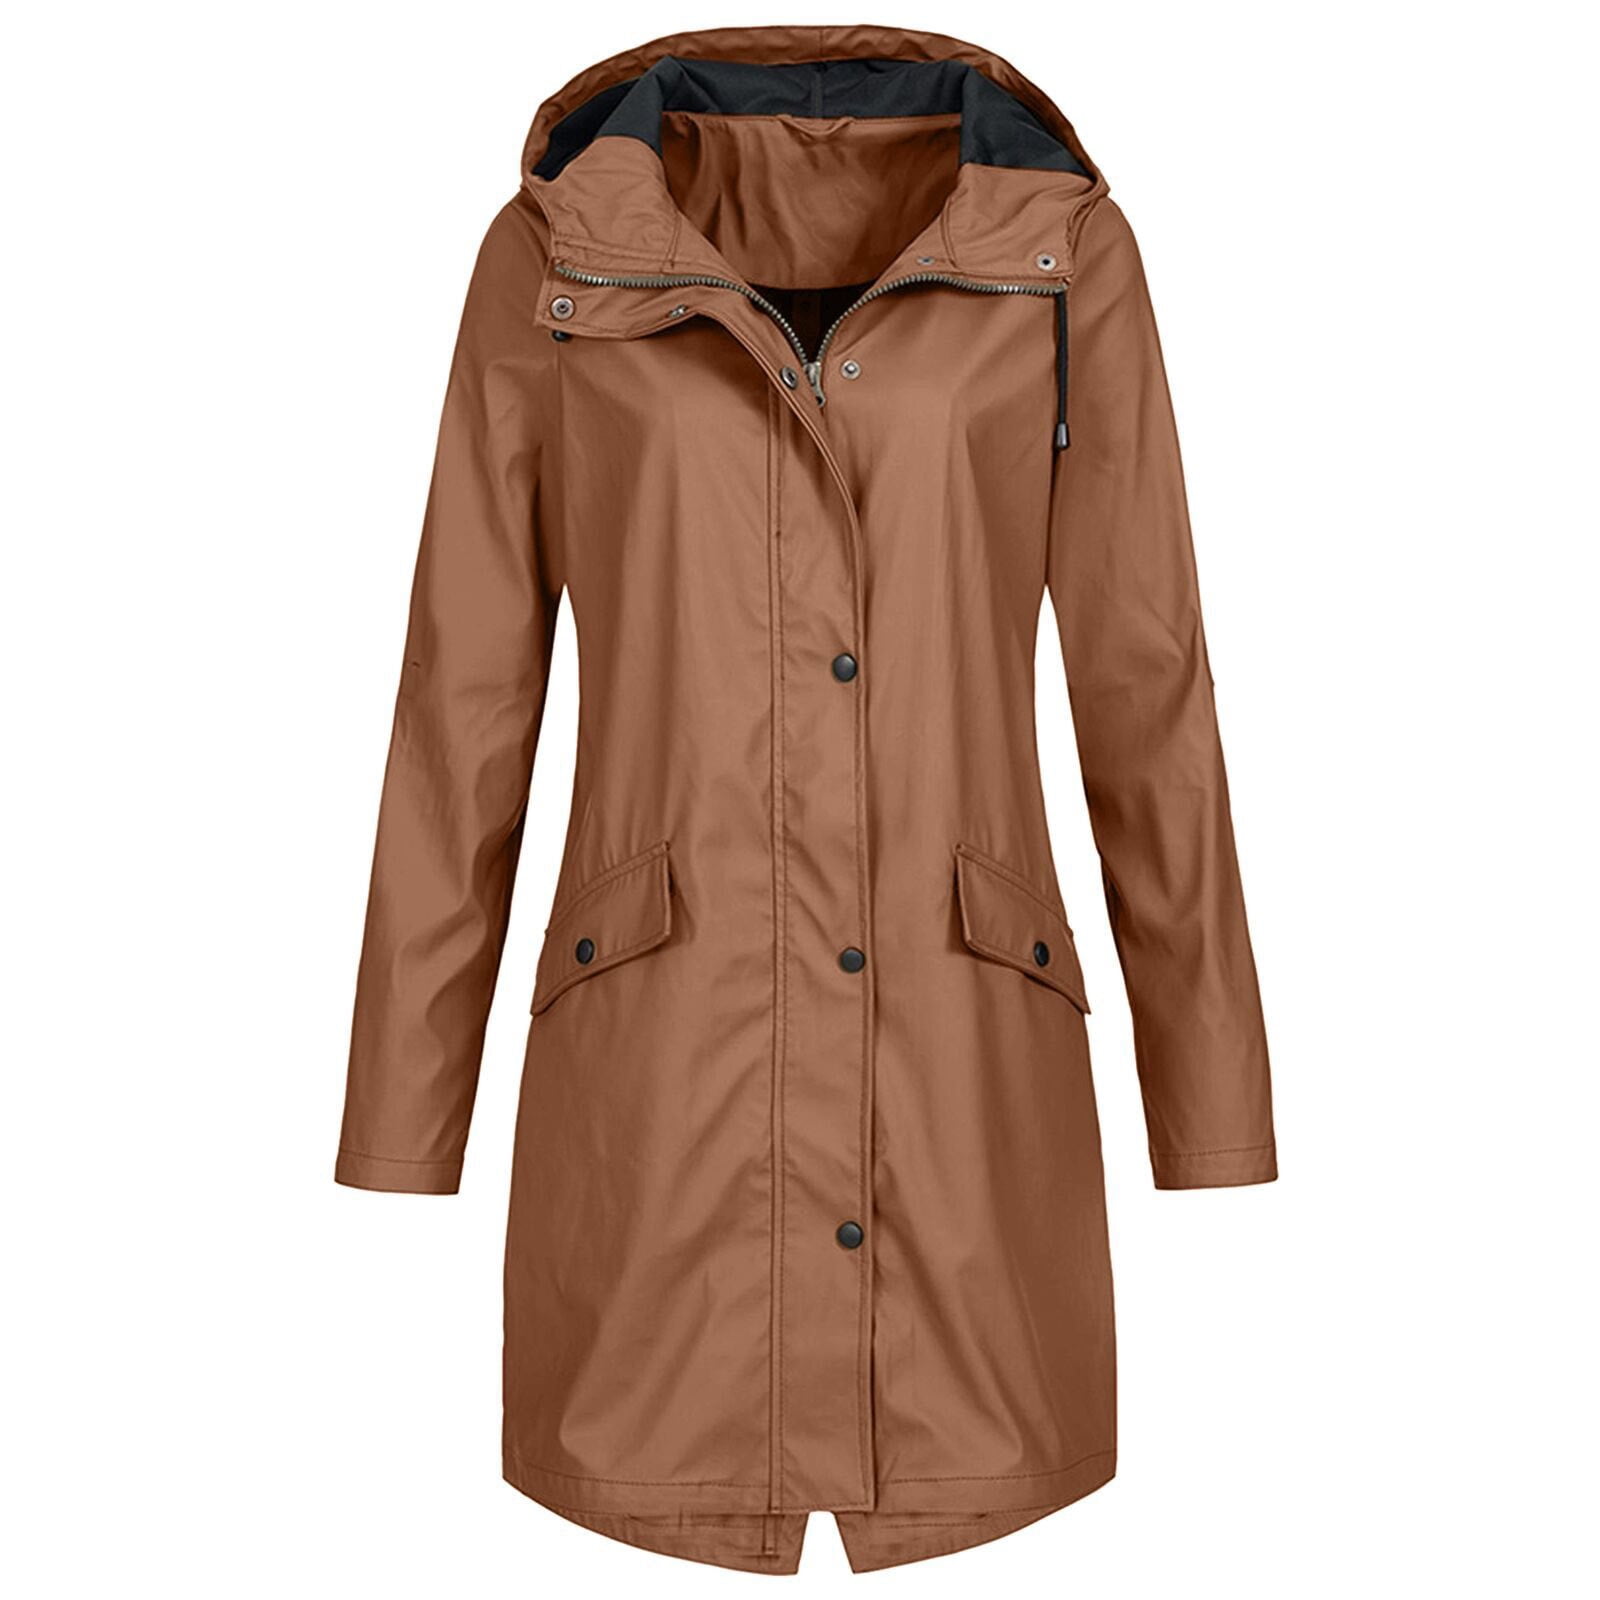 Women's Long Rain Jacket Waterproof with Hood Lightweight Windbreaker Outdoor Active Warm Raincoat Long Coat